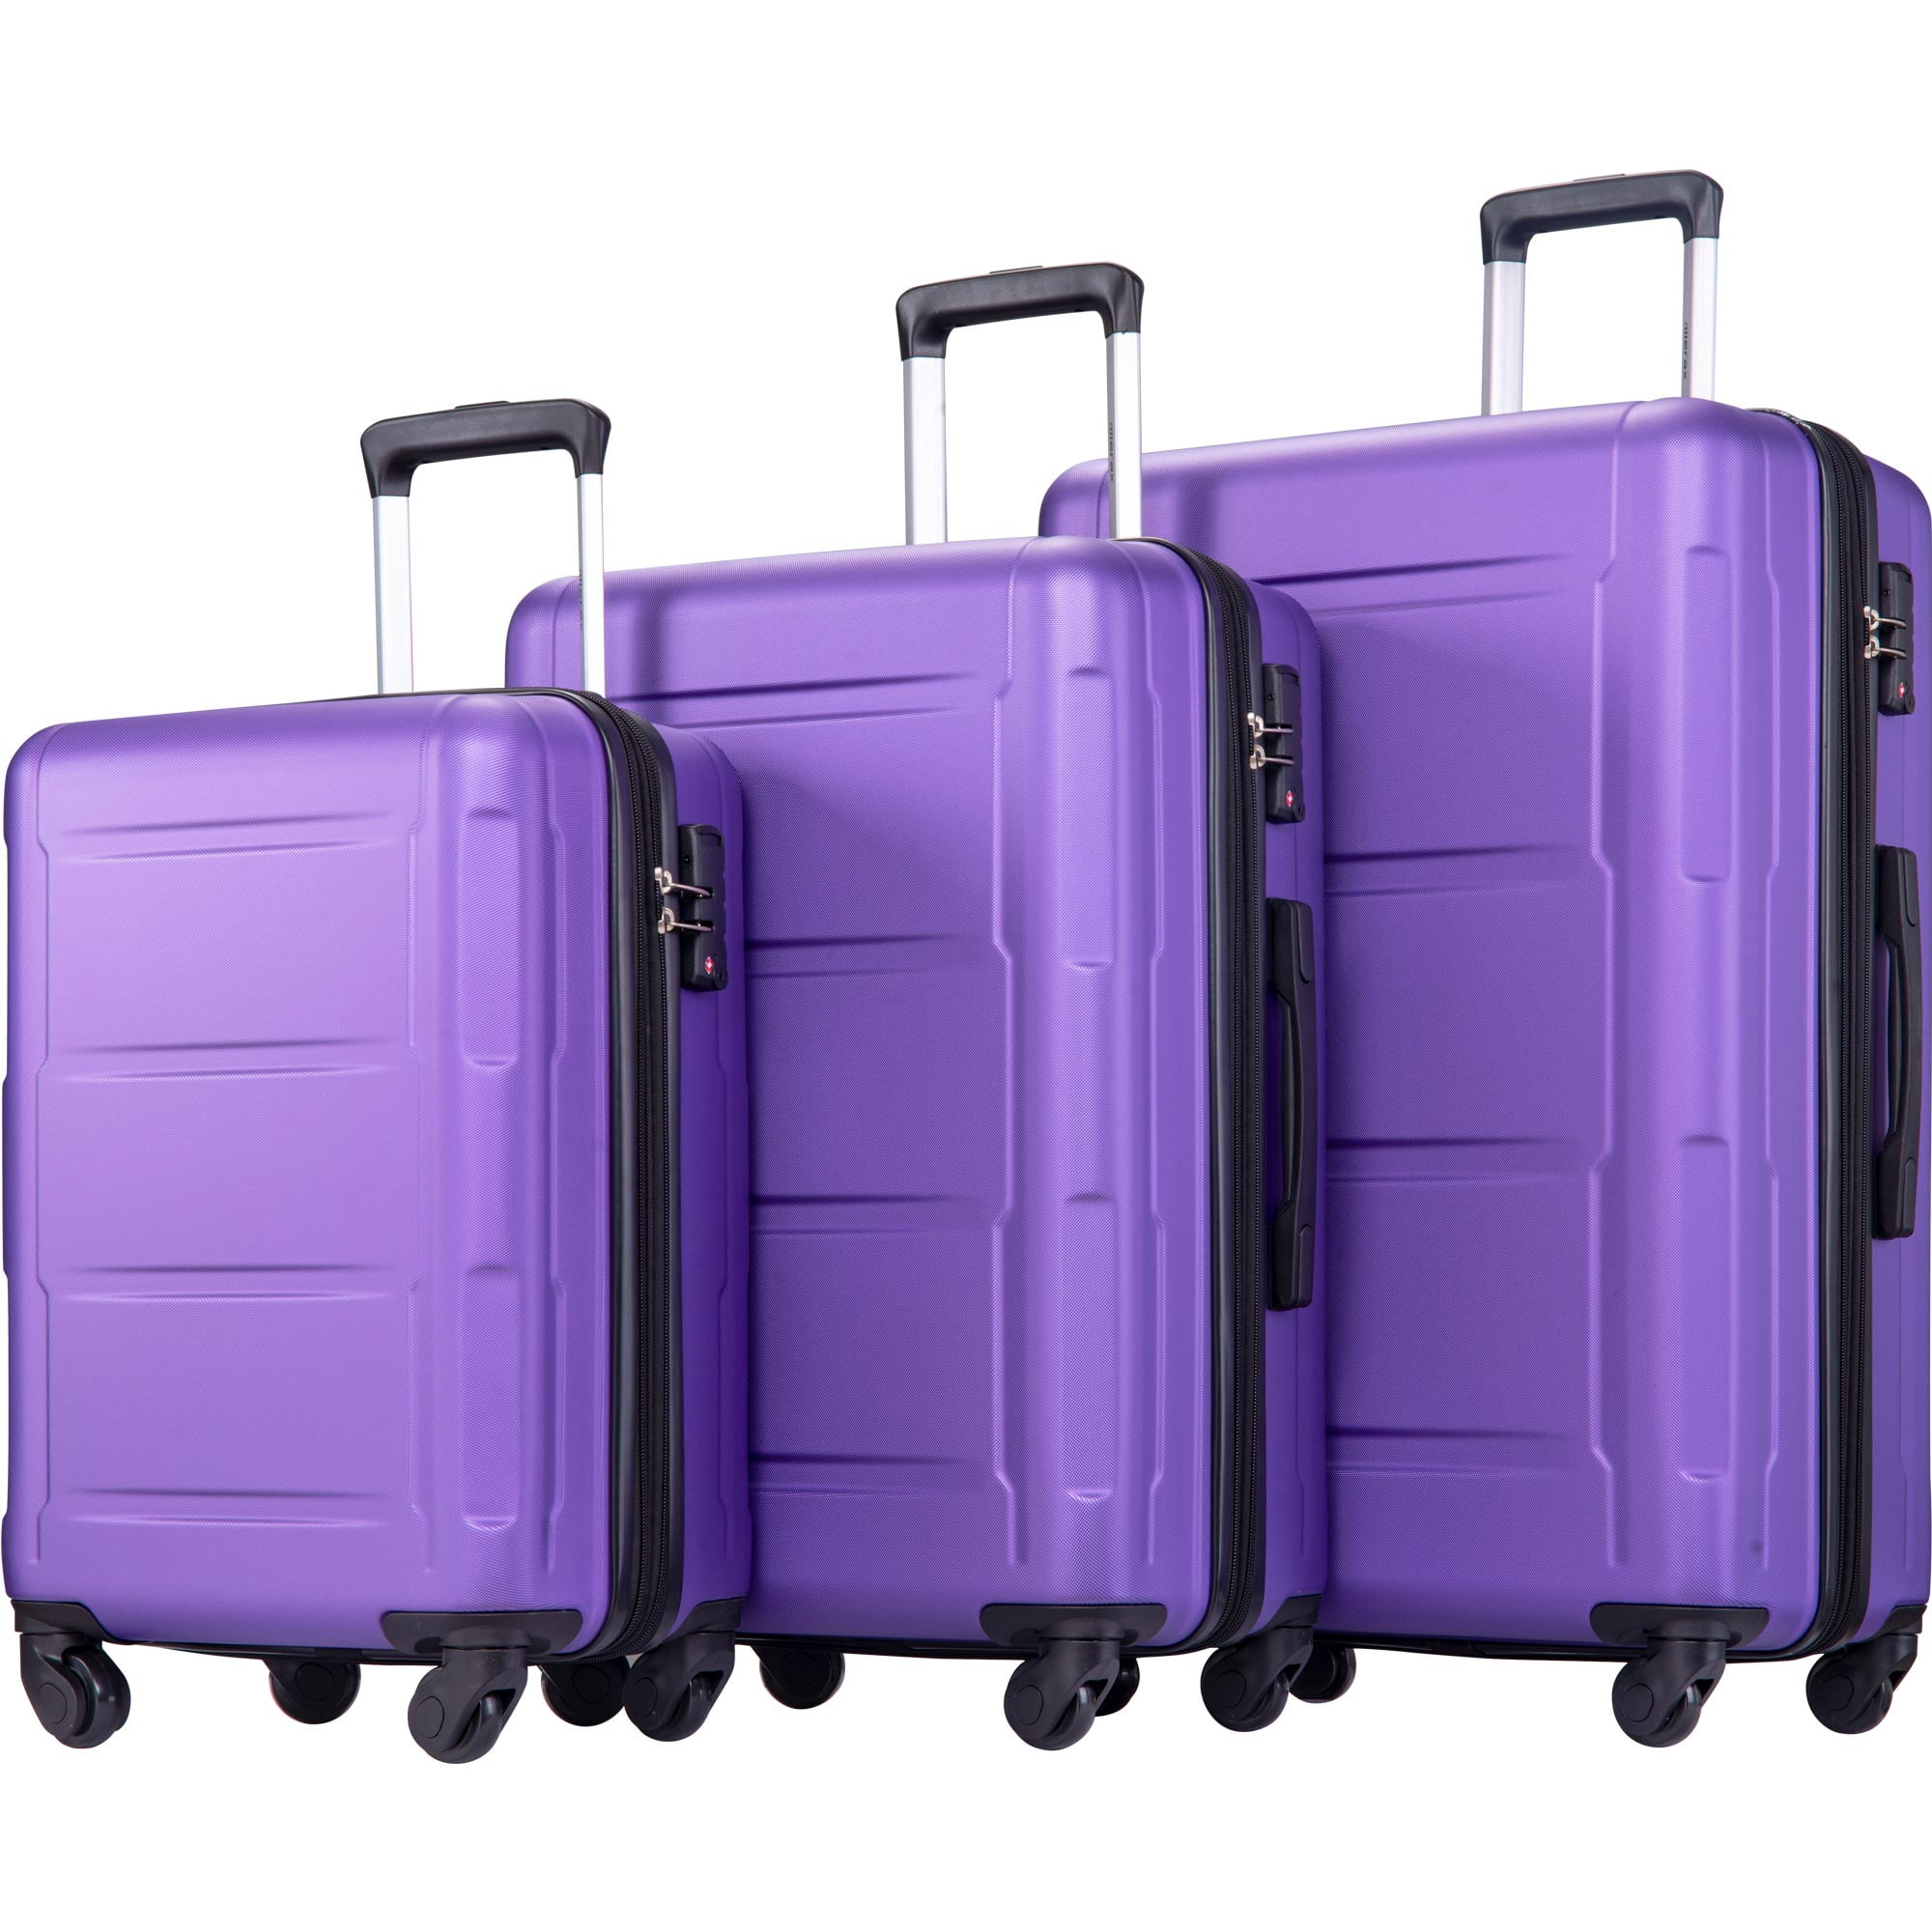 Flieks Luggage Sets 3 Piece Spinner Suitcase Lightweight 20 24 28 inch Purple 